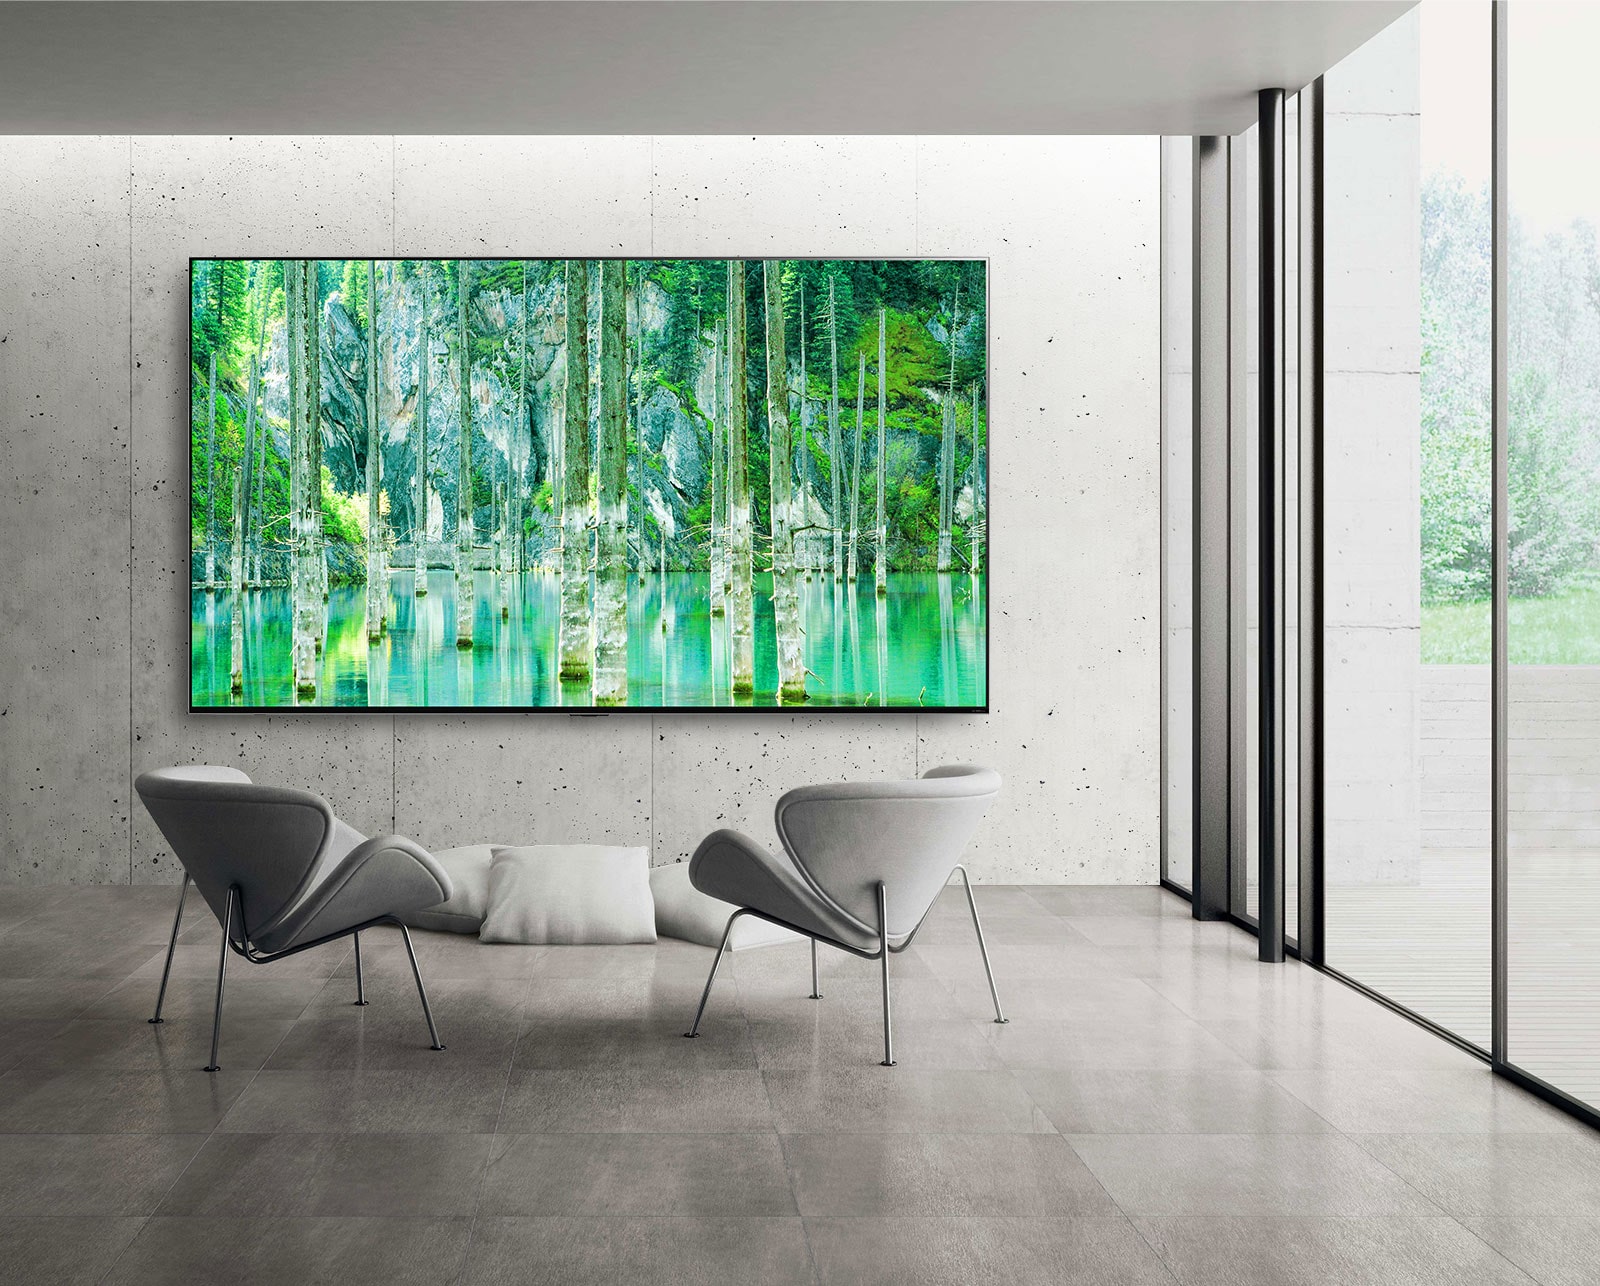 Изображение телевизора LG QNED MiniLED с большим экраном, установленного на голой серой бетонной стене. Перед телевизором стоят два стула, а на экране демонстрируется зелень природы.